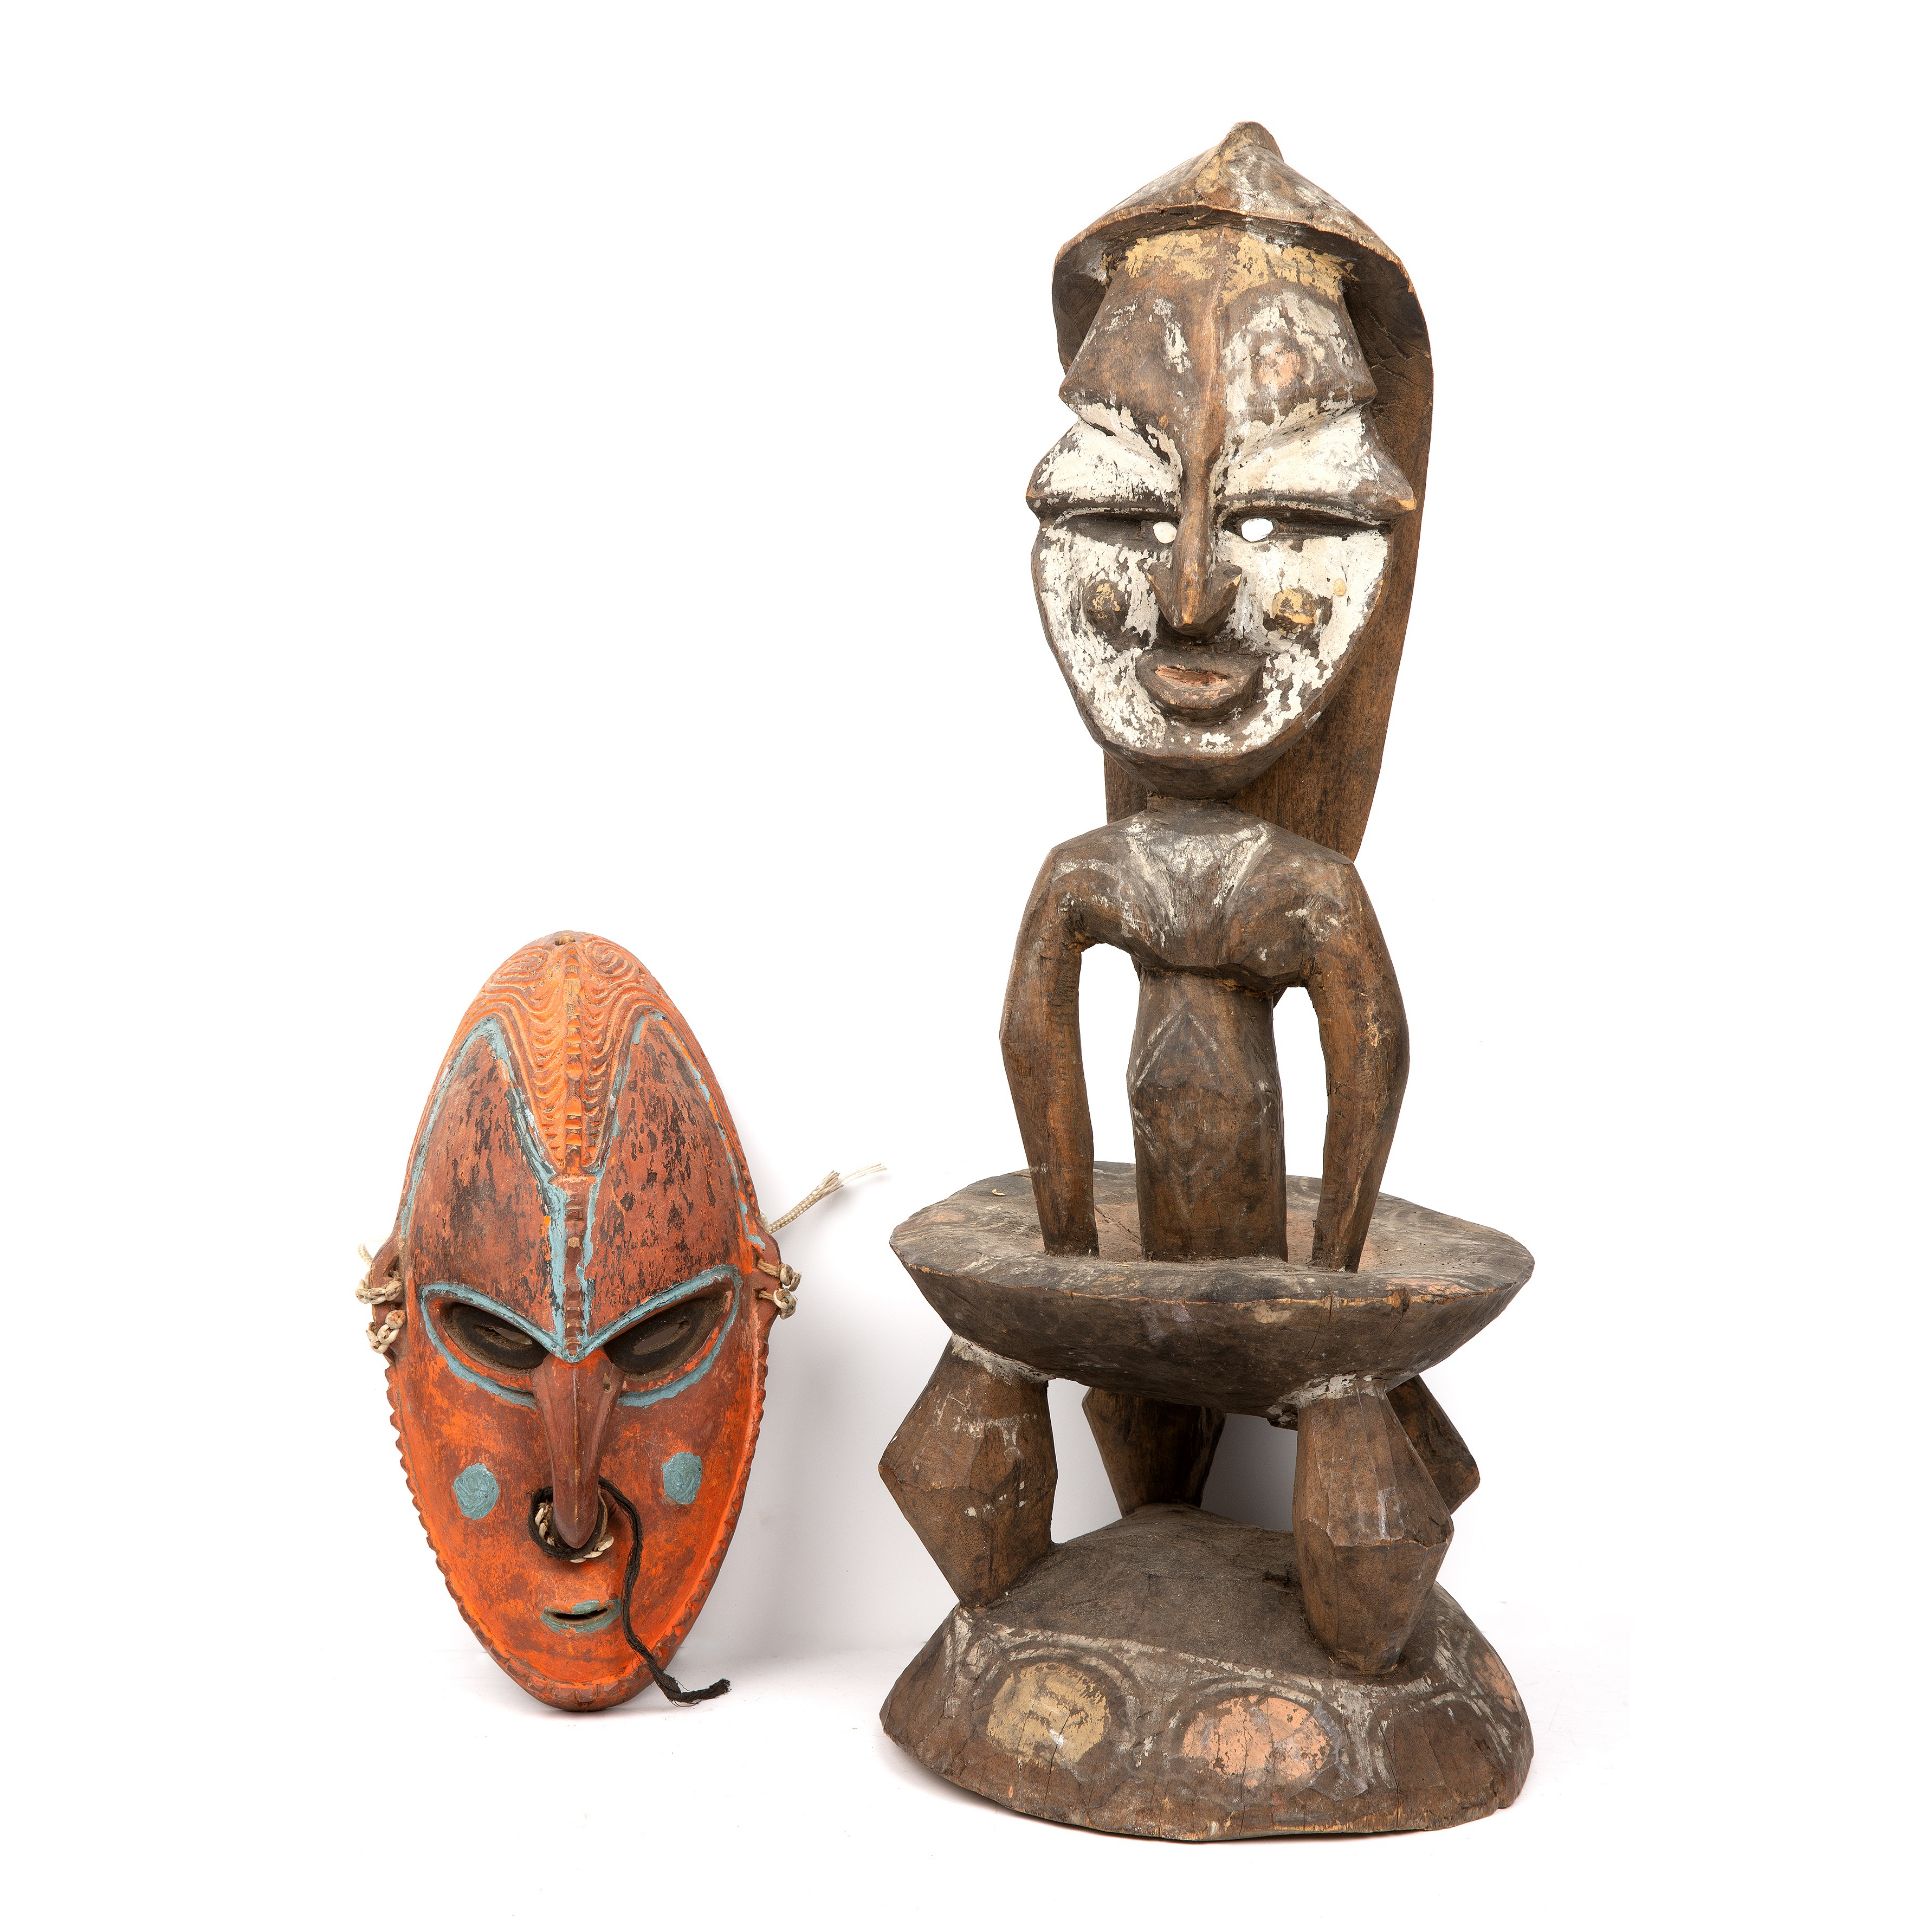 A Papua New Guinea, middle Sepik stool 22cm wide 57cm high together with a coastal Sepik mask 15cm